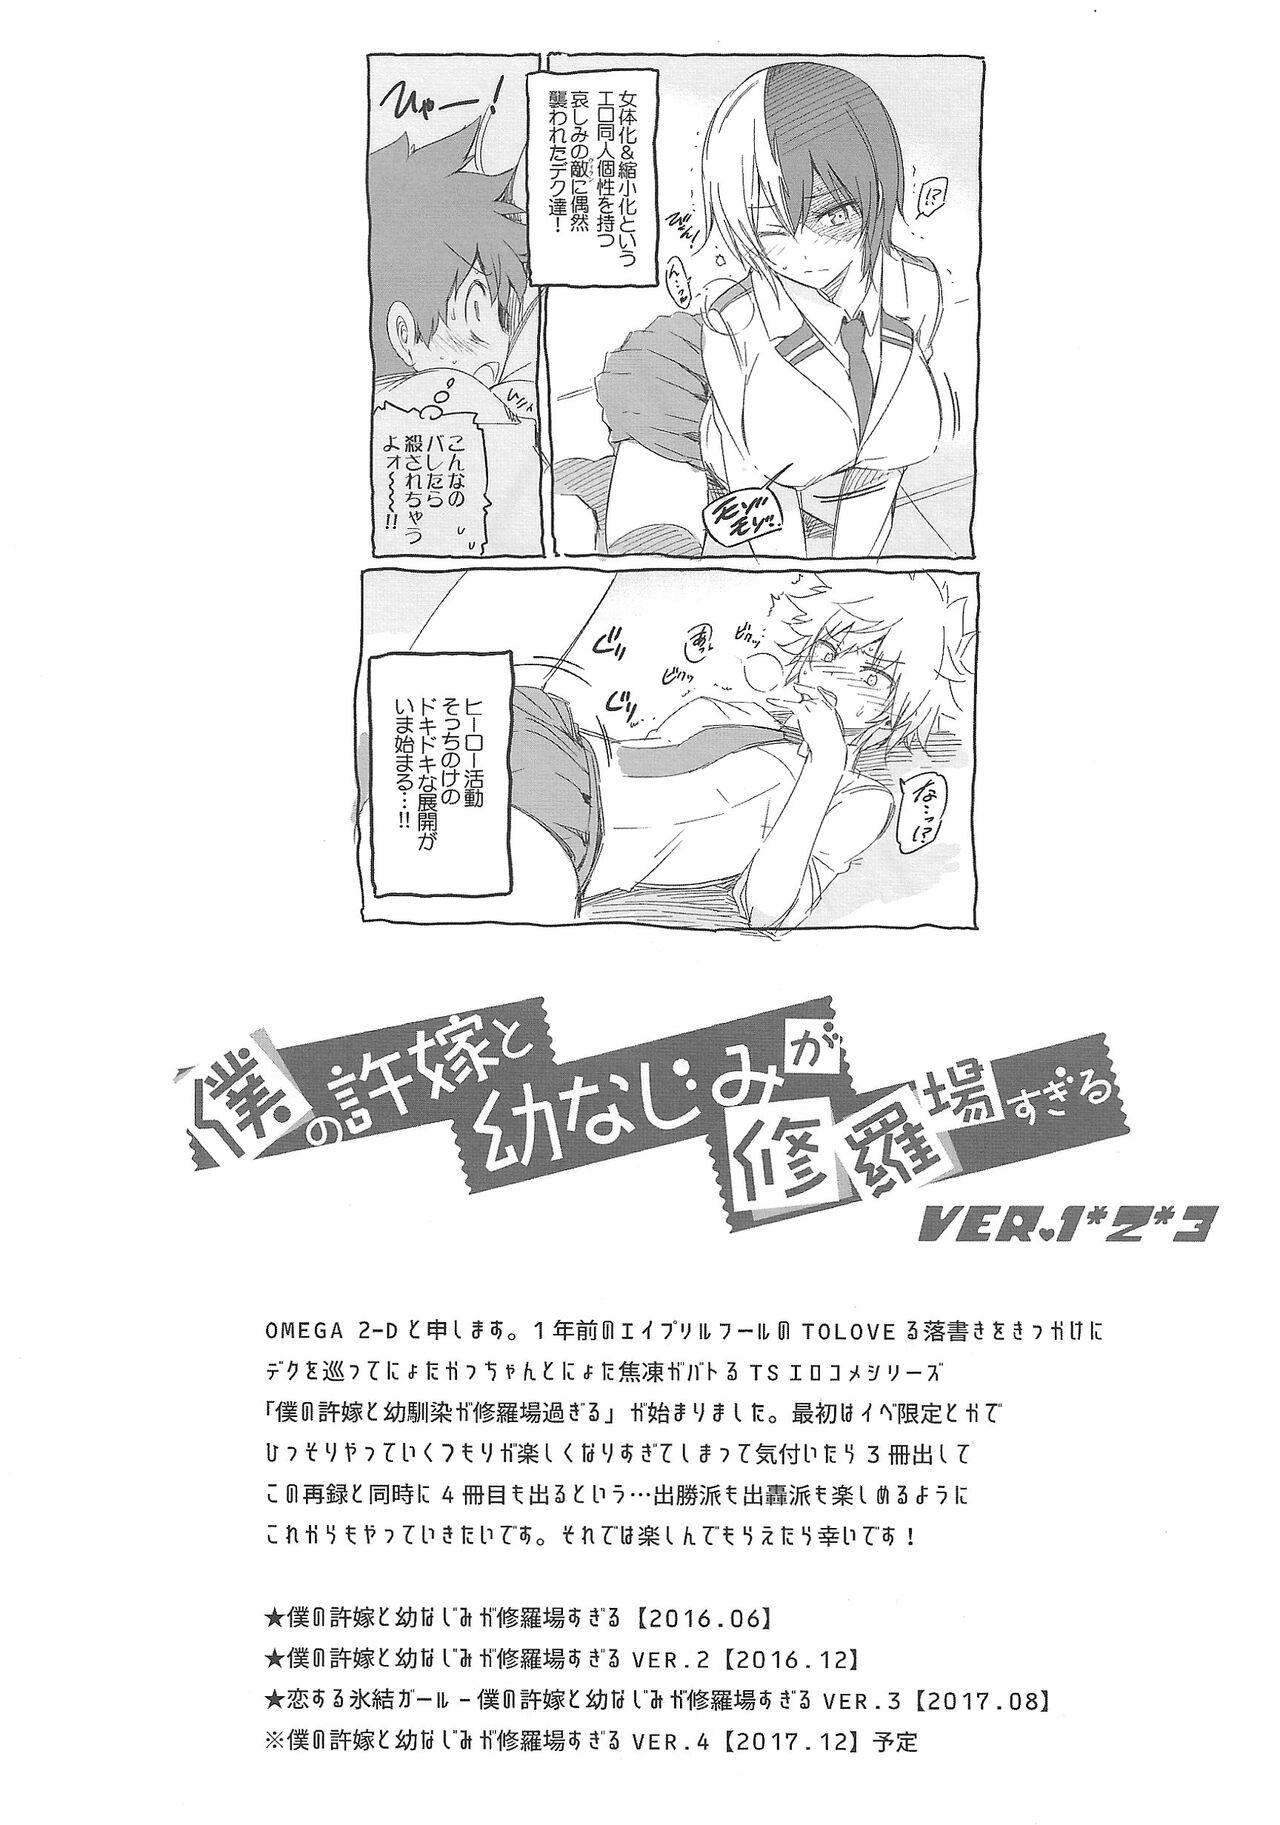 Moms Boku no Iinazuke to Osananajimi ga Shuraba Sugiru Volume 1, 2 & 3 - My hero academia | boku no hero academia Cam Sex - Page 3